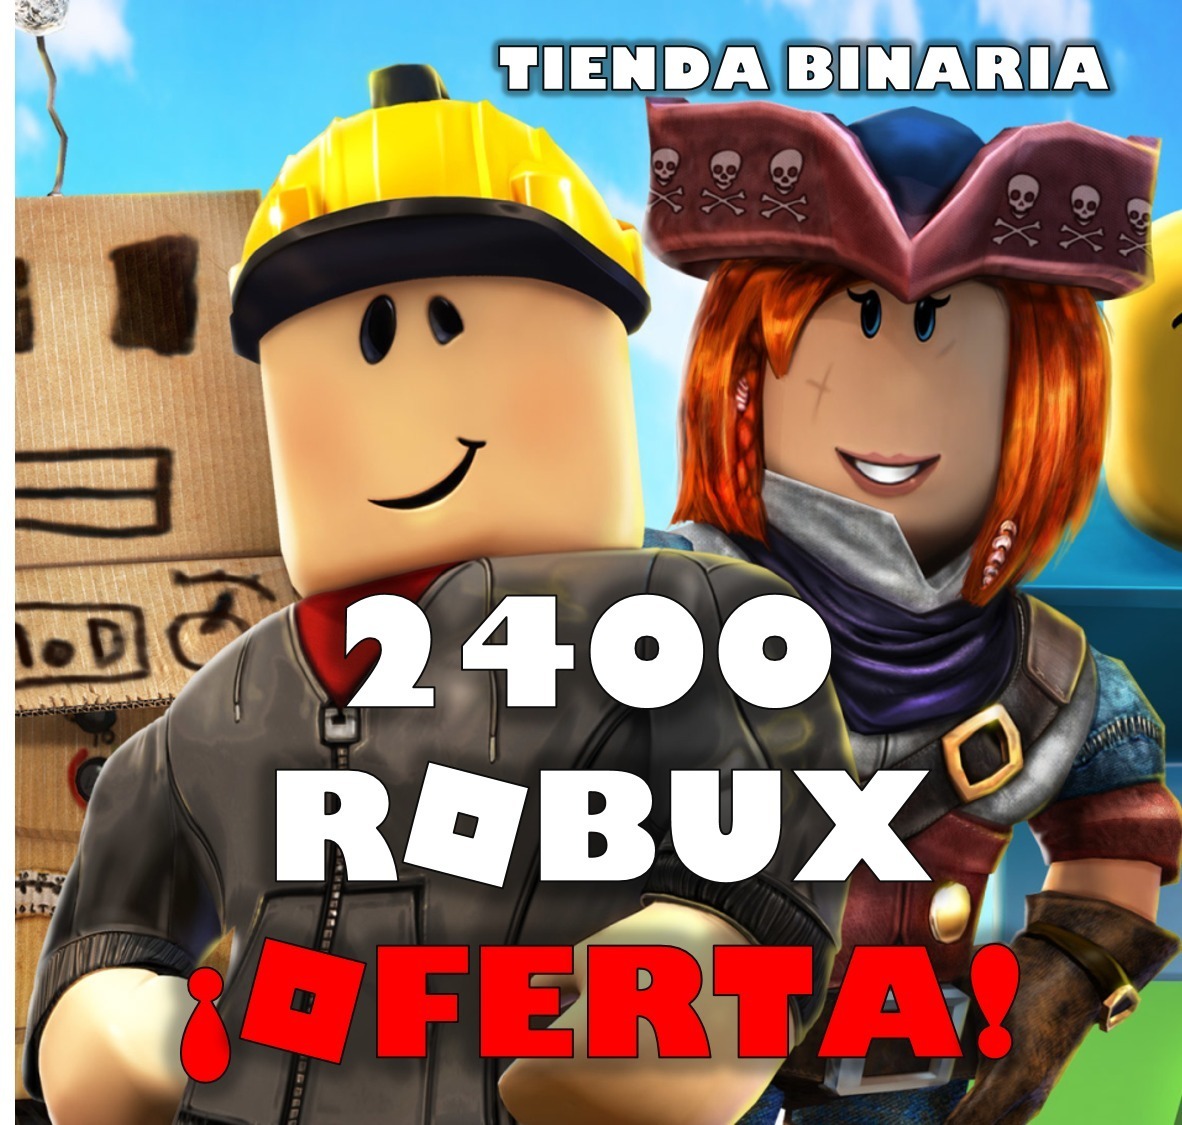 2400 Robux En Roblox El Mejor Precio 299 00 En Mercado Libre